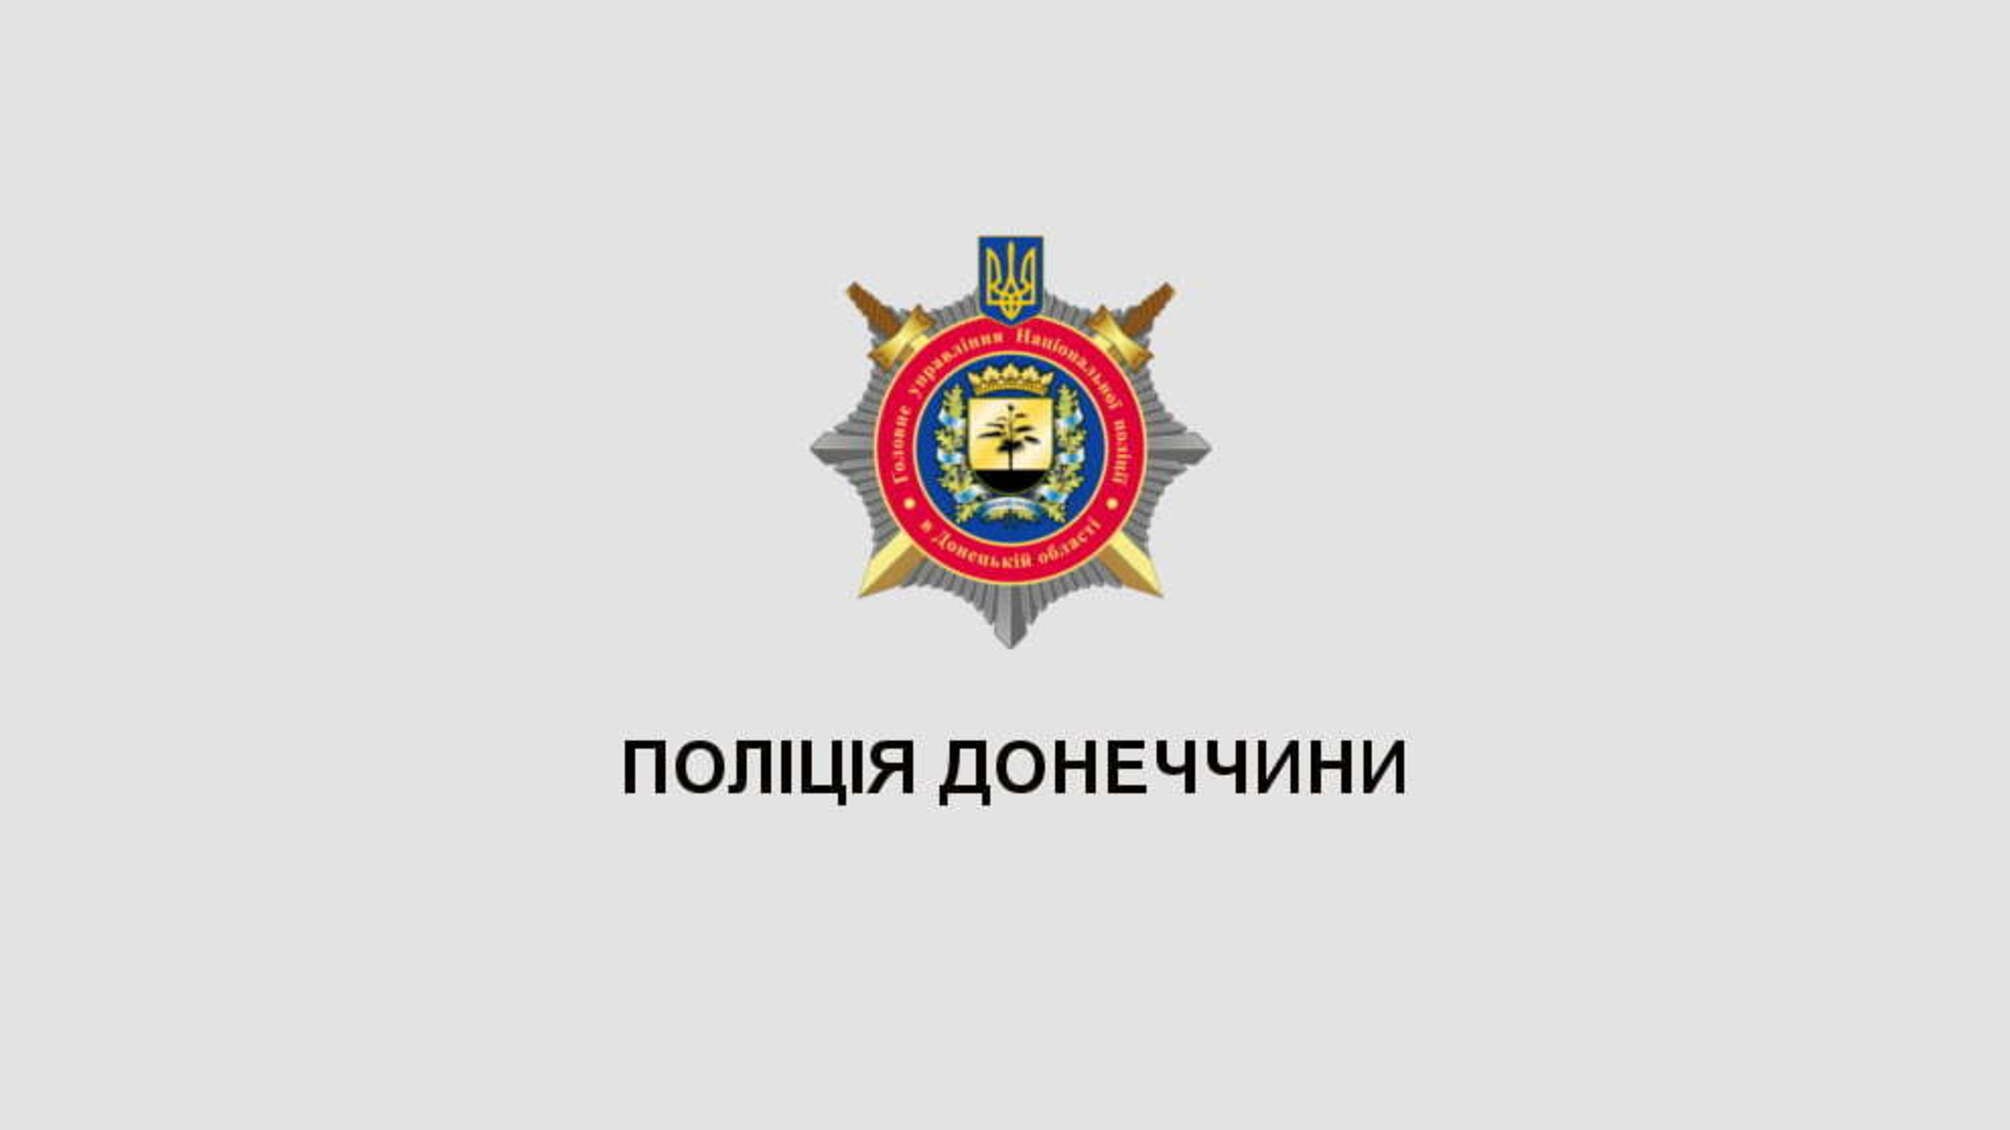 За минулий місяць поліція Донеччини скерувала до суду п’ять кримінальних проваджень відносно організованих злочинних груп